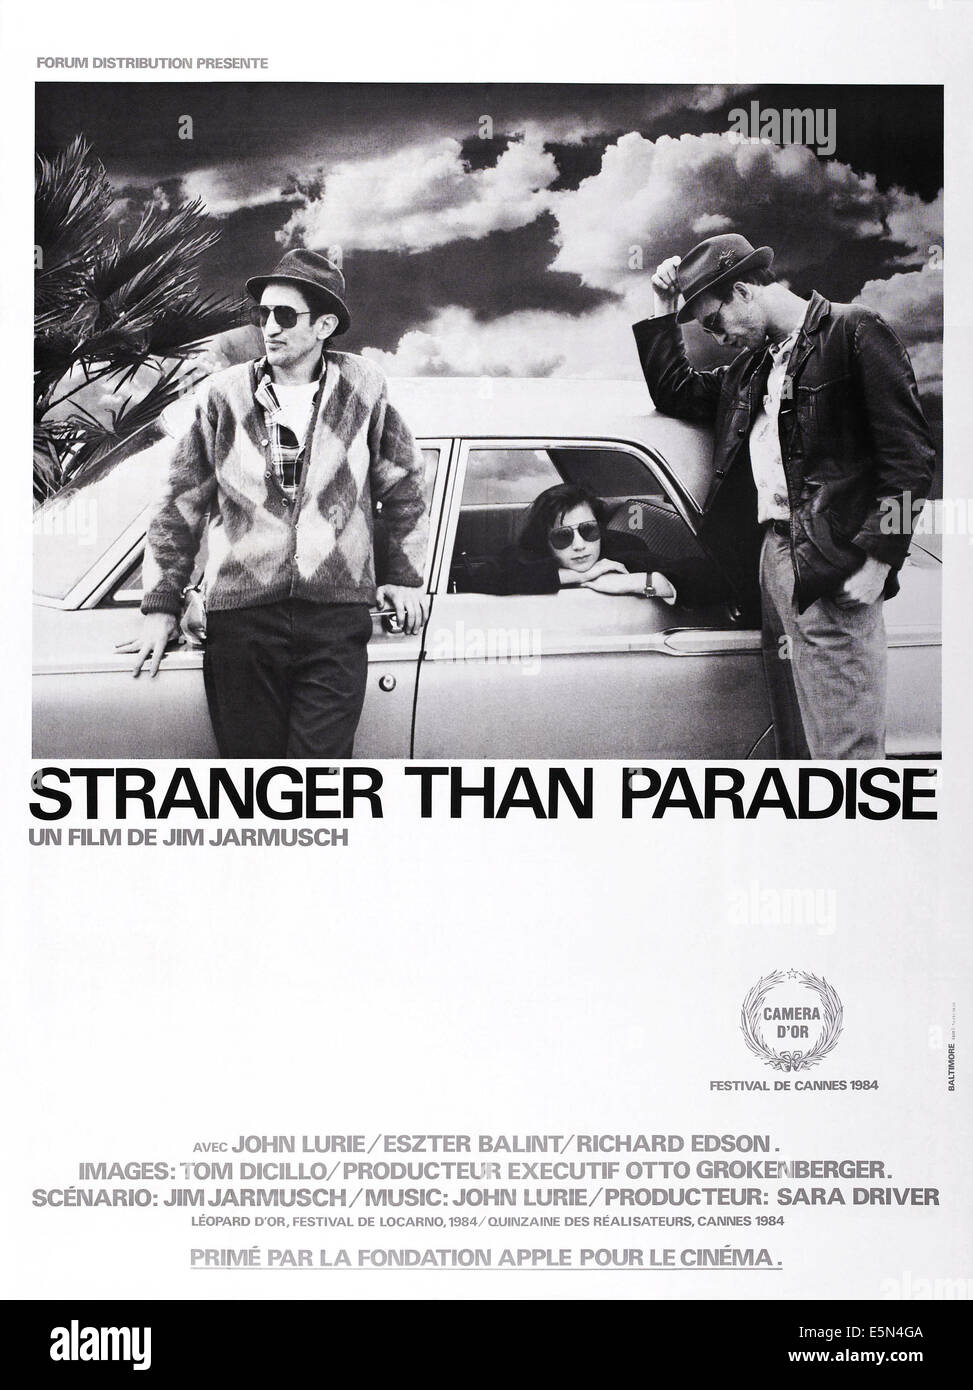 STRANGER THAN PARADISE, US poster art, from left: Richard Edson, Eszter Balint, John Lurie, 1984, ©Samuel Goldwyn Stock Photo